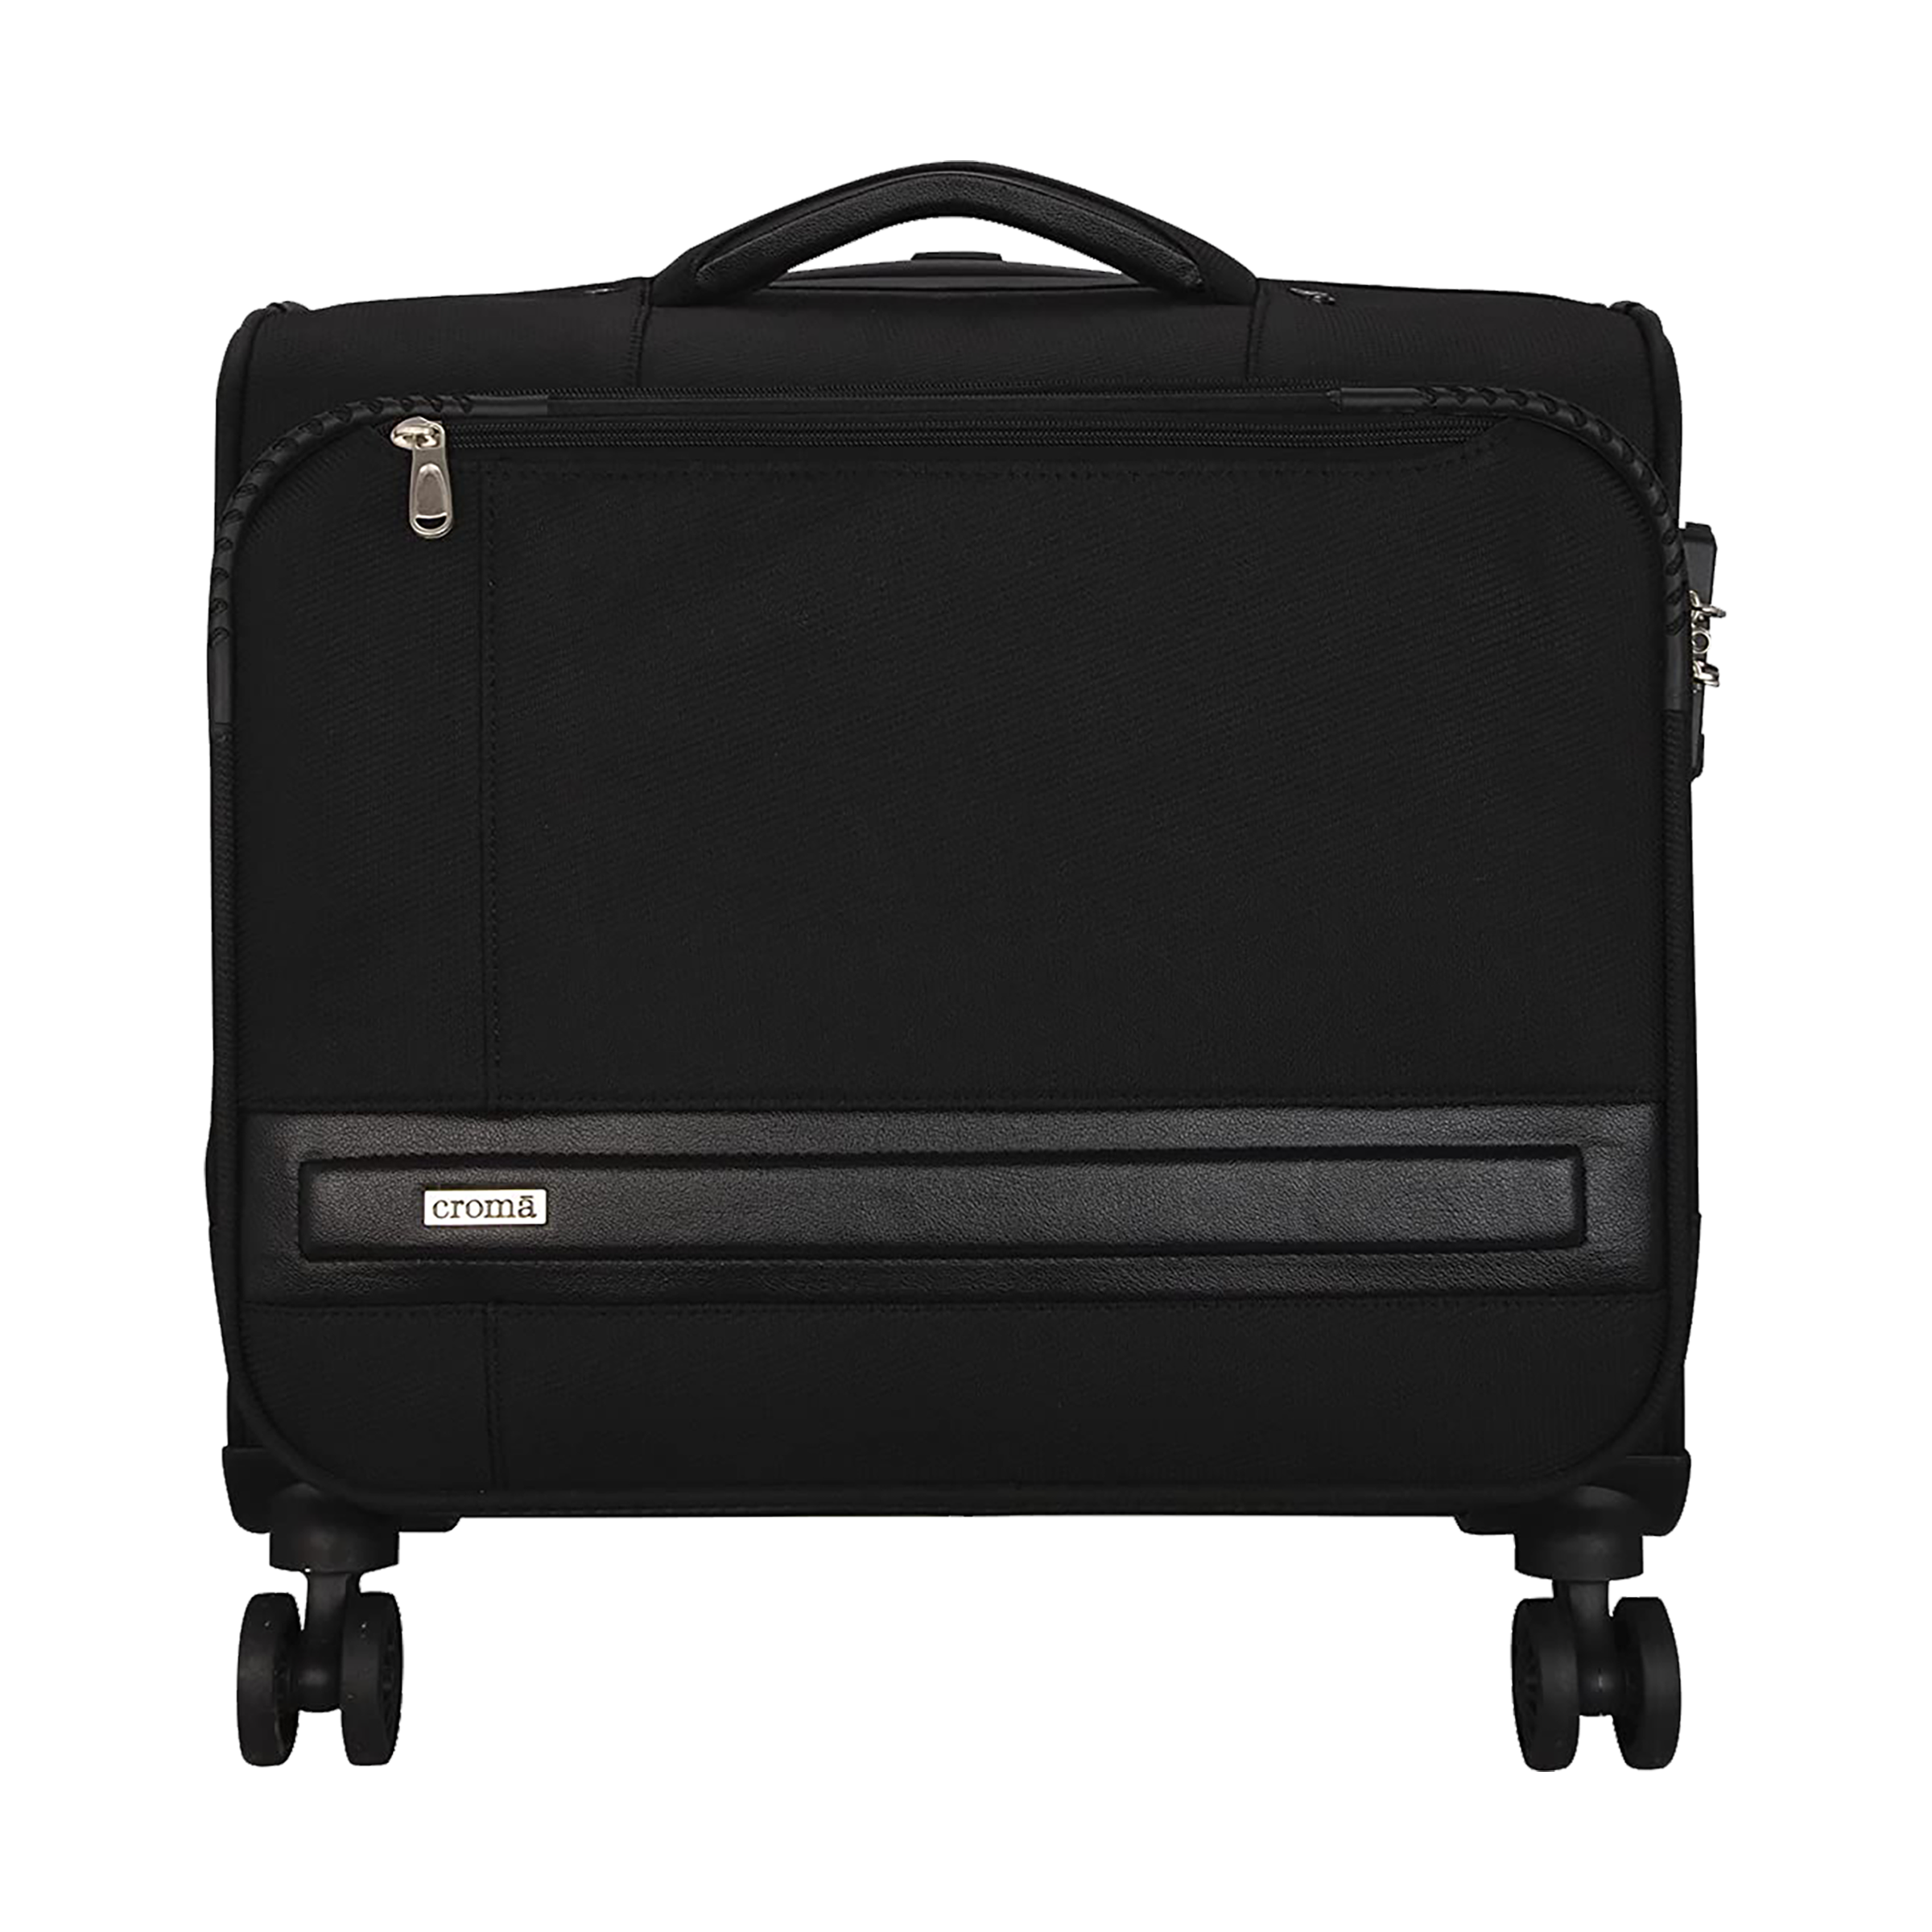 AmazonBasics Polycarbonate Hard 53 cms suitcase N989black  Amazonin  Fashion